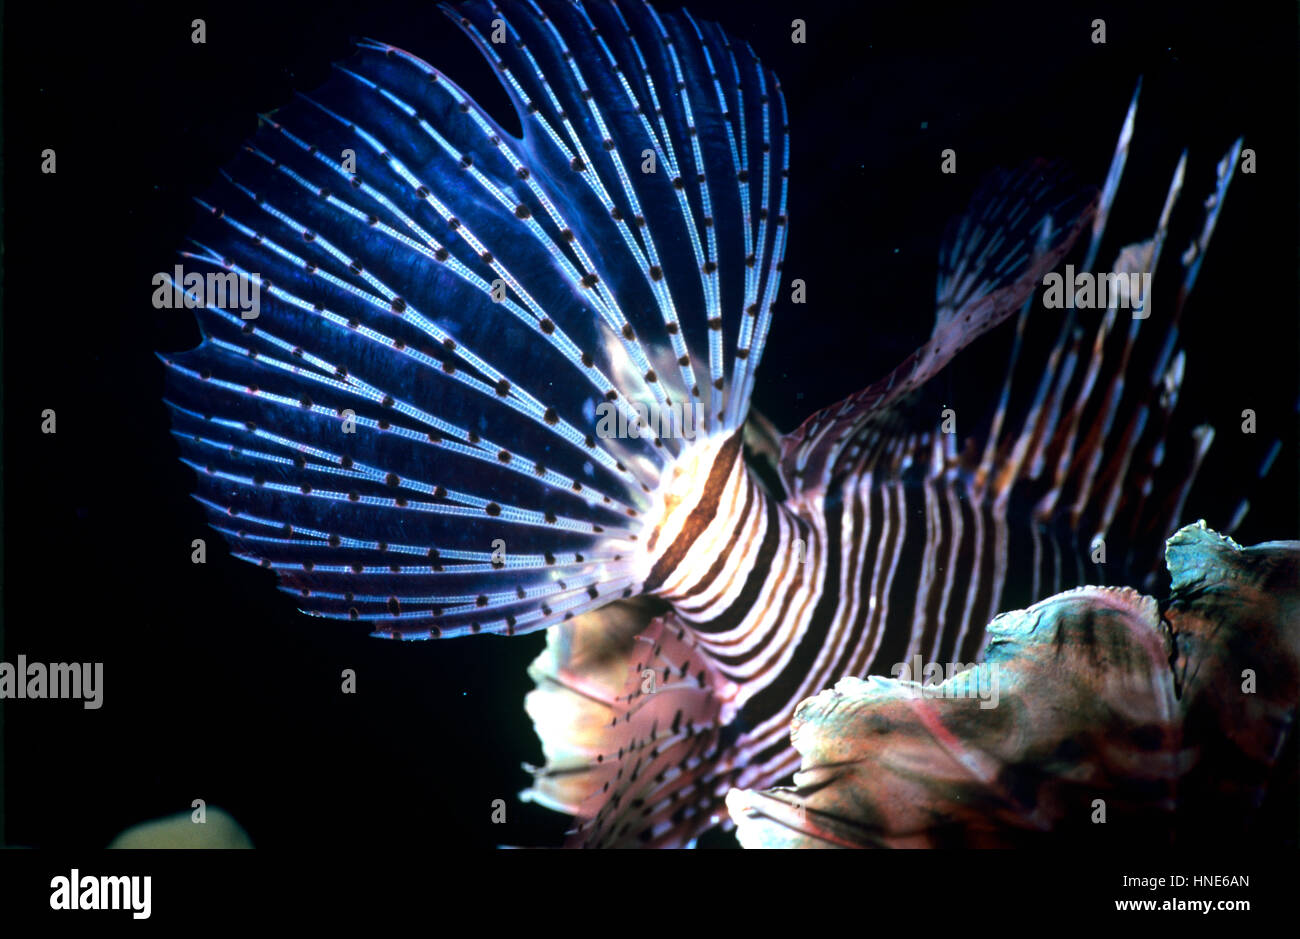 La coda di un leone (pterois volitans). A differenza della maggior parte dei pesci, la pinna caudale non è a forcella, ma - arrotondati con raggi collegati da membrane. Mar Rosso. Foto Stock